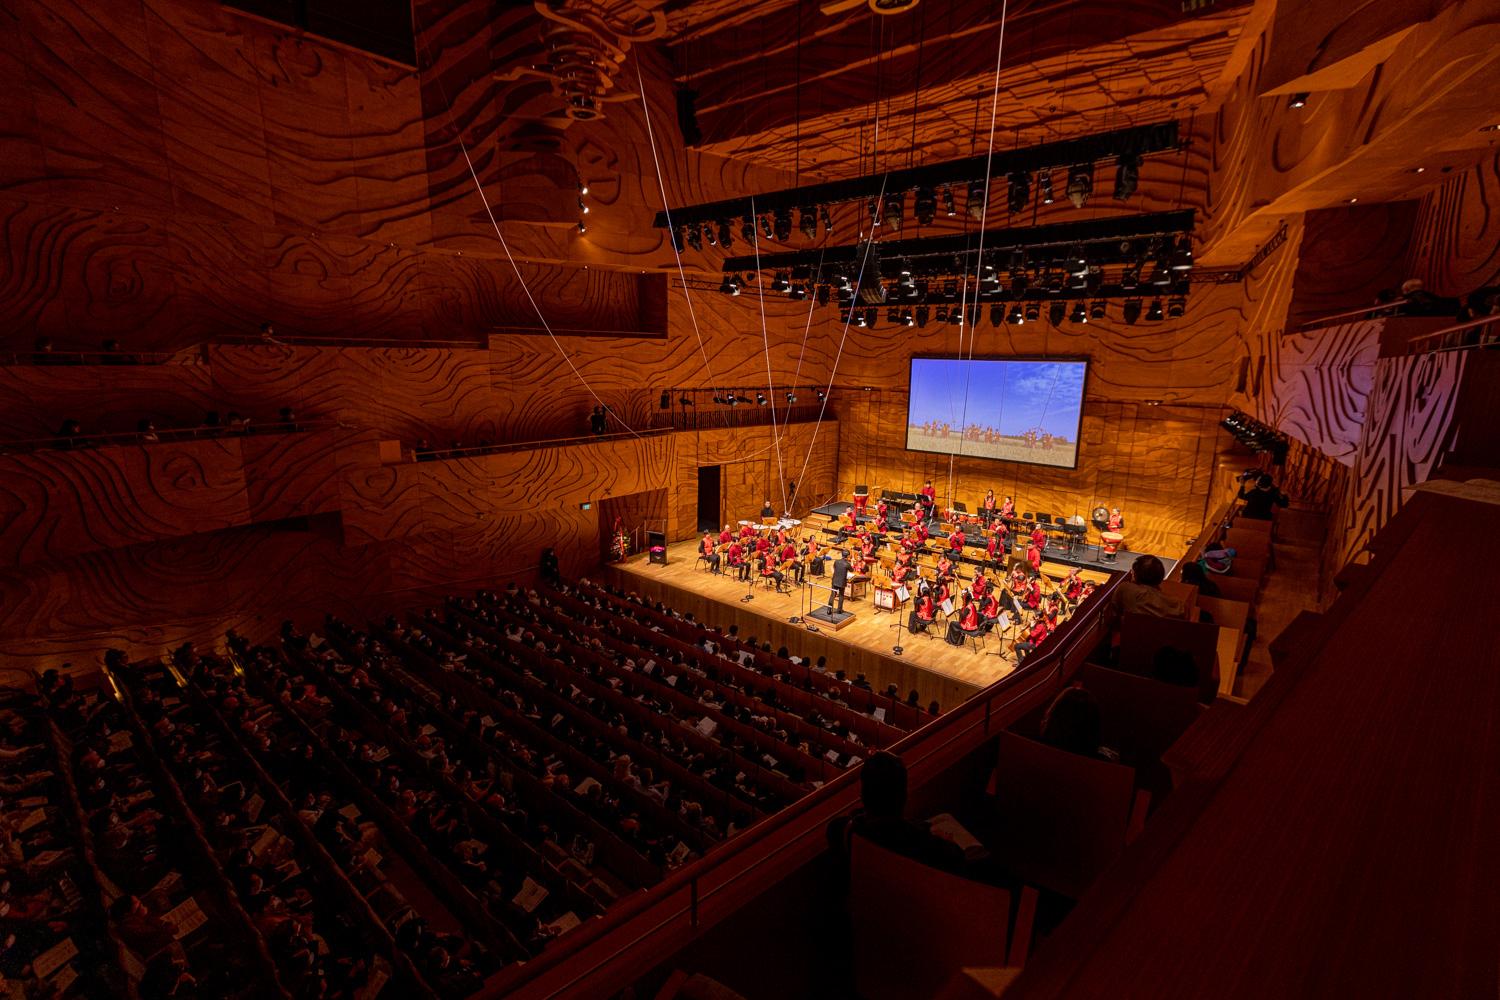 香港駐悉尼經濟貿易辦事處昨日（九月四日）在澳洲墨爾本舉行《肇樂風韻耀雙慶》中樂音樂會，慶祝香港特別行政區成立25周年，並推廣傳統中樂。音樂會獲超過900名觀眾熱烈歡迎。